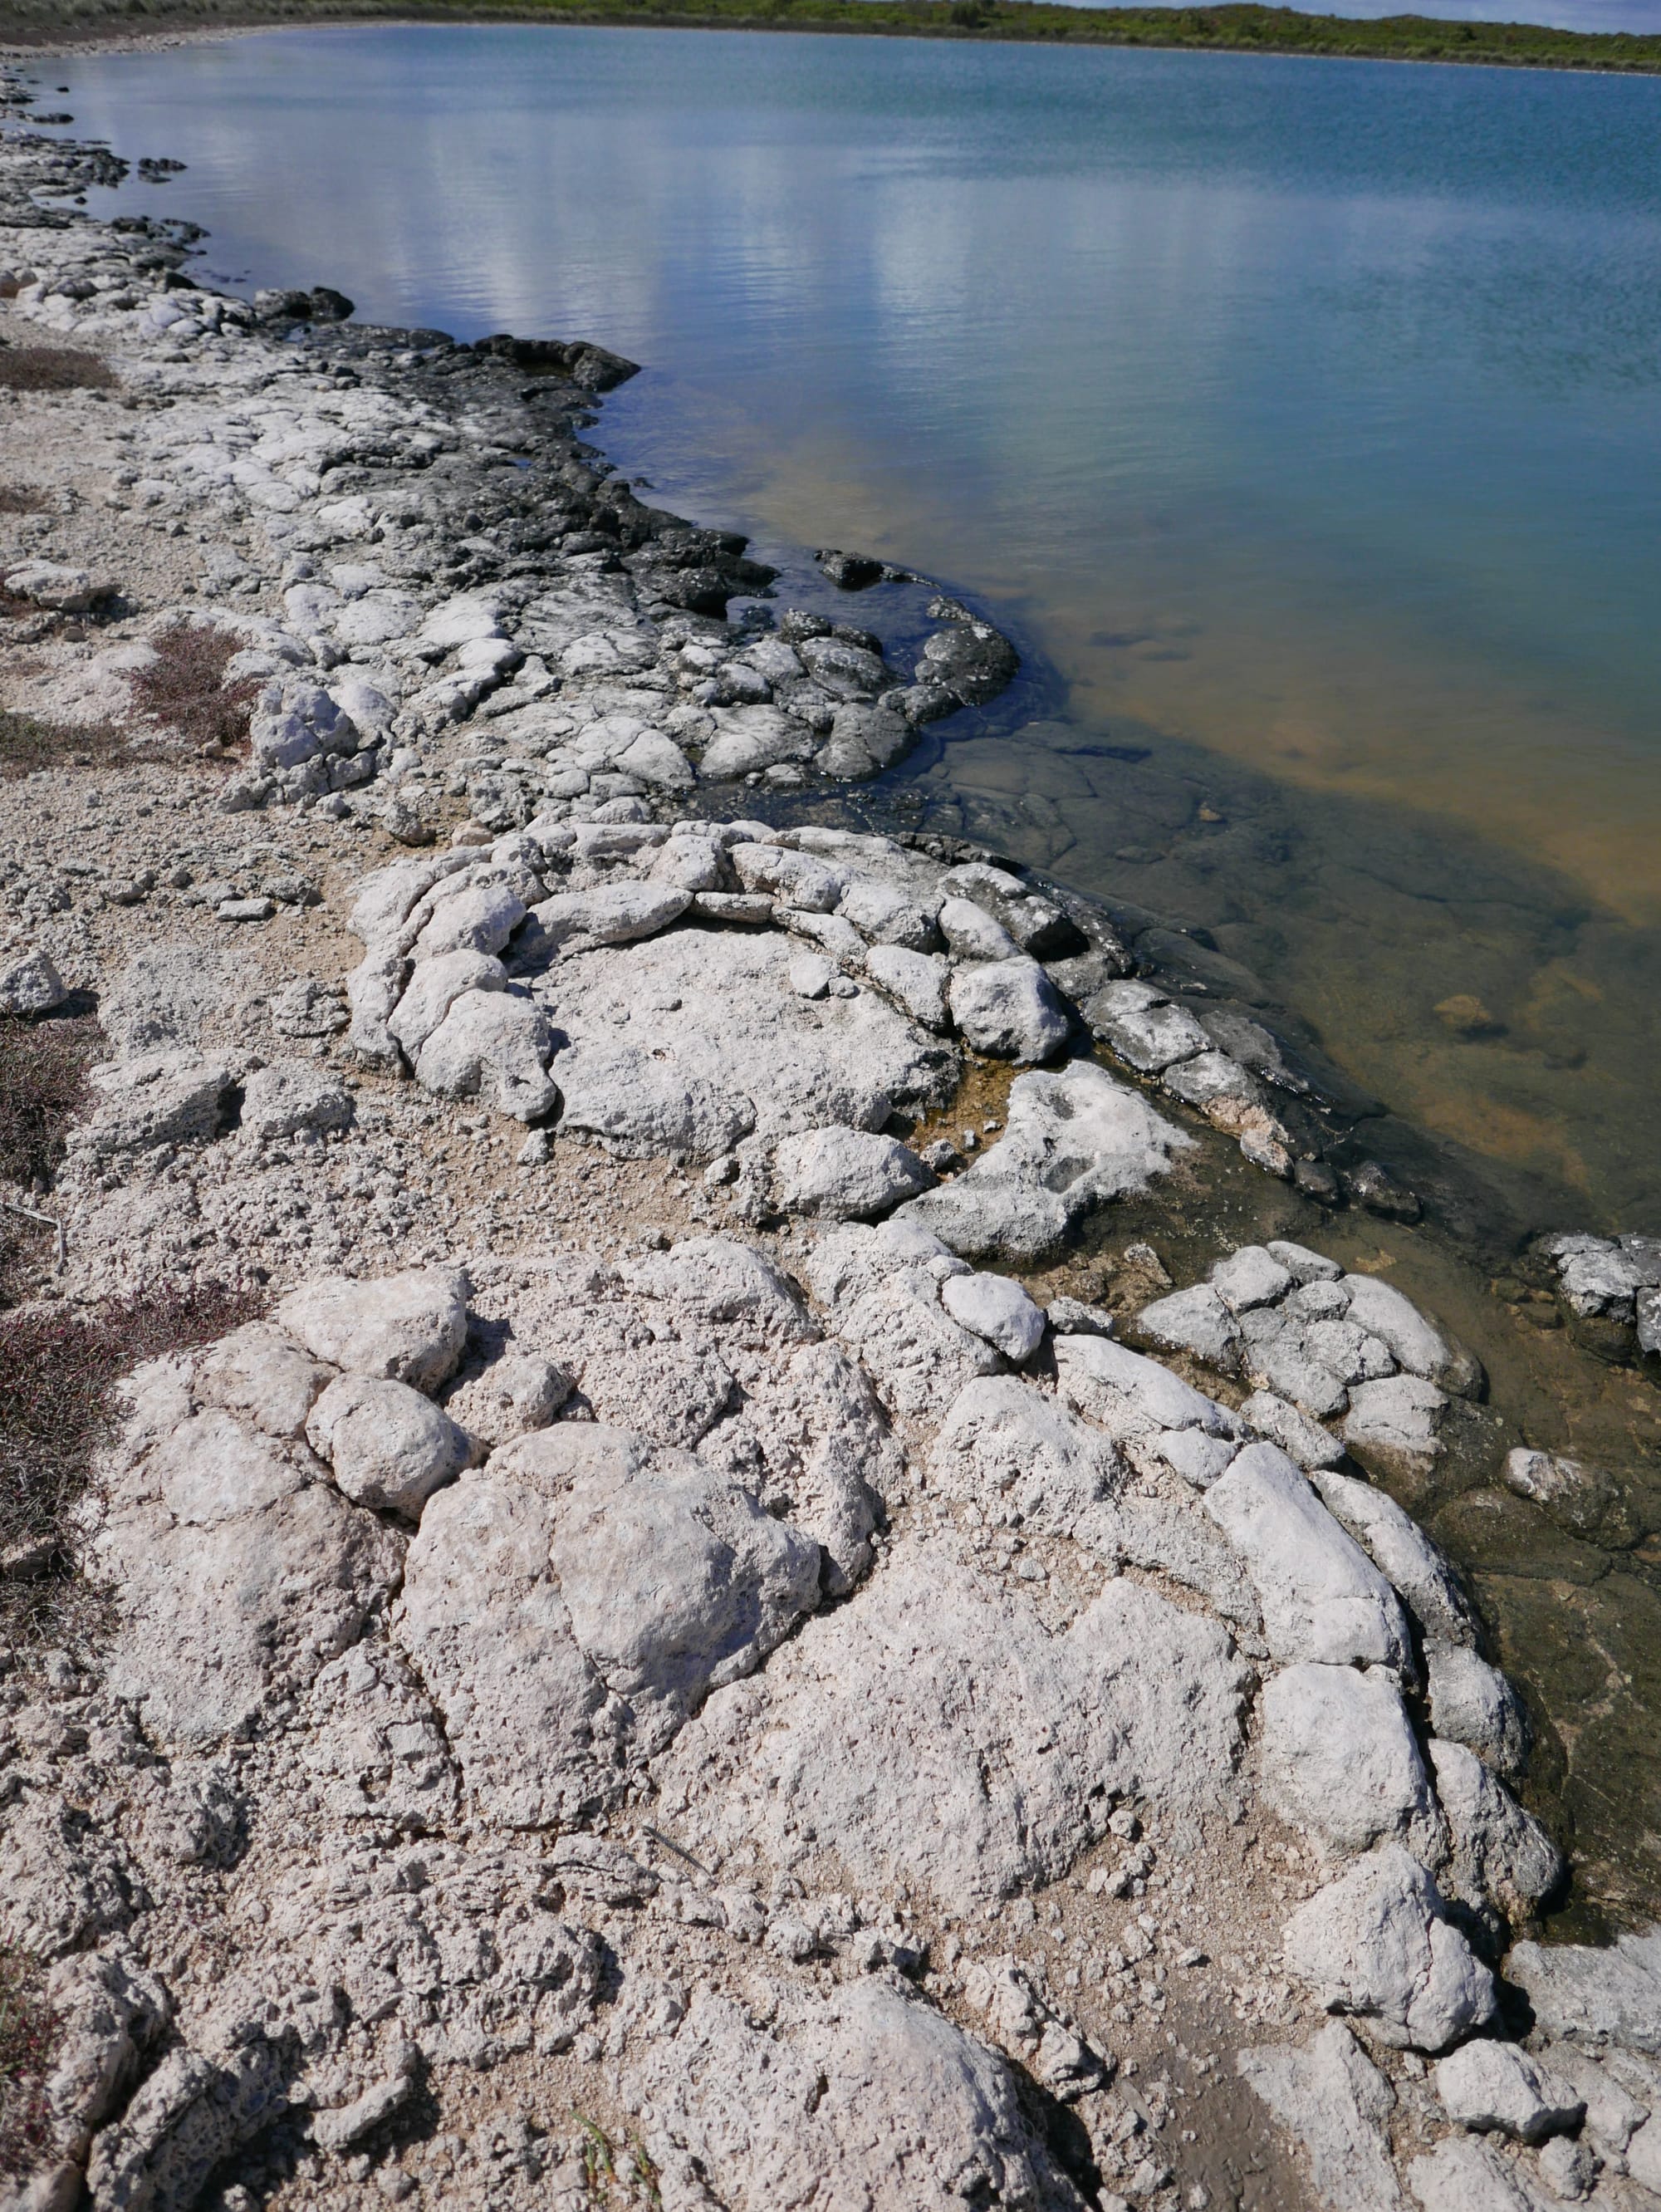 Photo by Author — shoreline of Lake Thetis, Cervantes, WA 6511, Australia